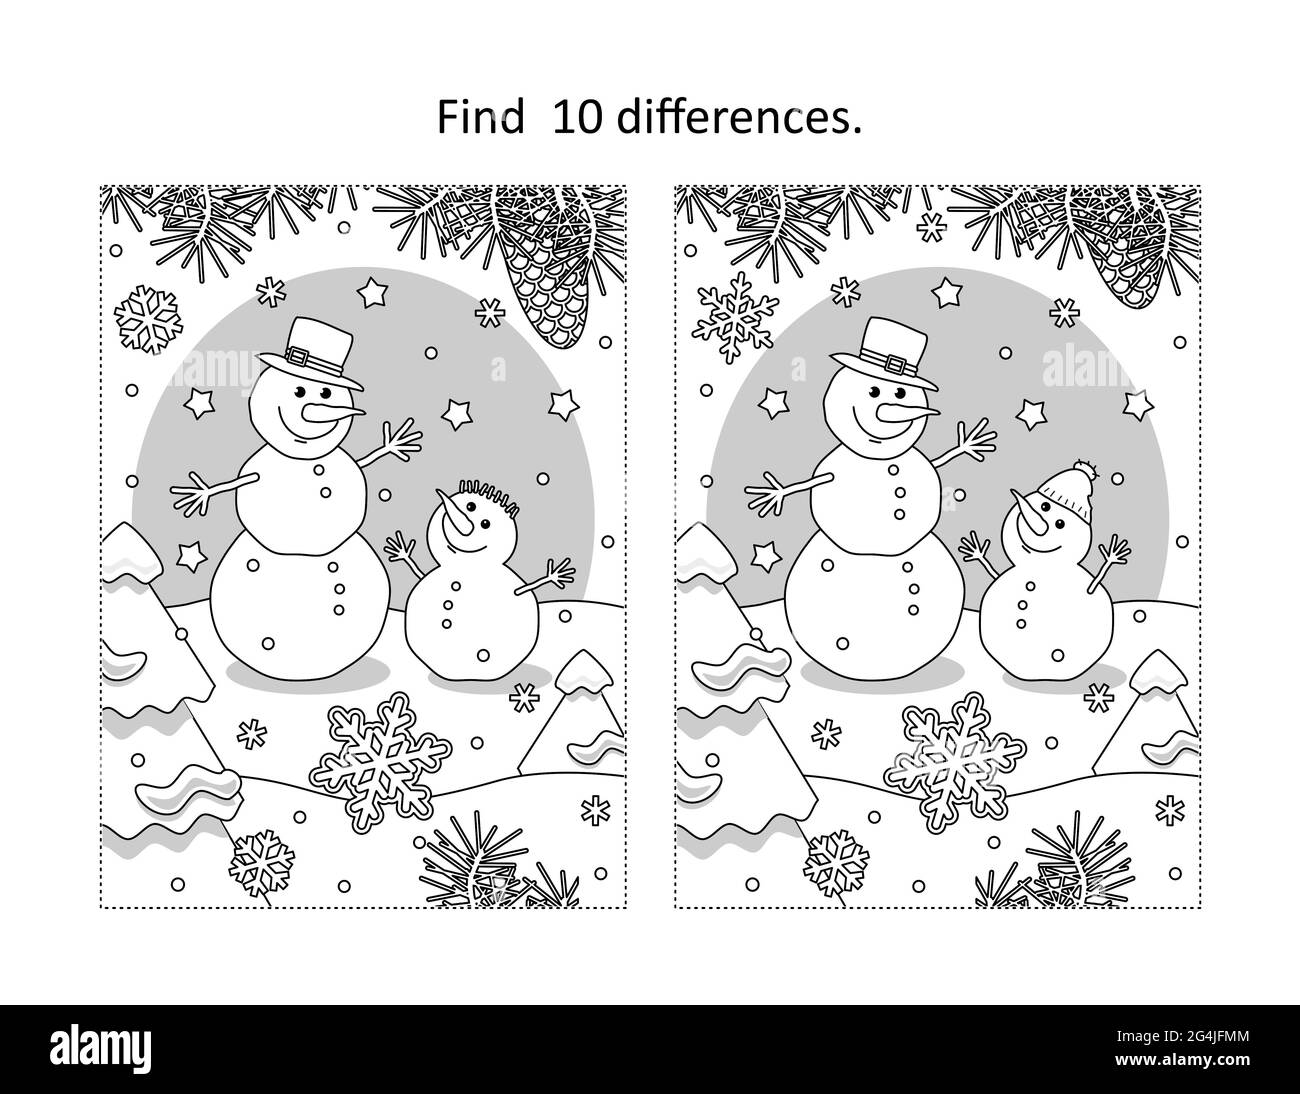 Trouvez 10 différences visuel puzzle et coloriage page avec deux amis bonhommes de neige Banque D'Images